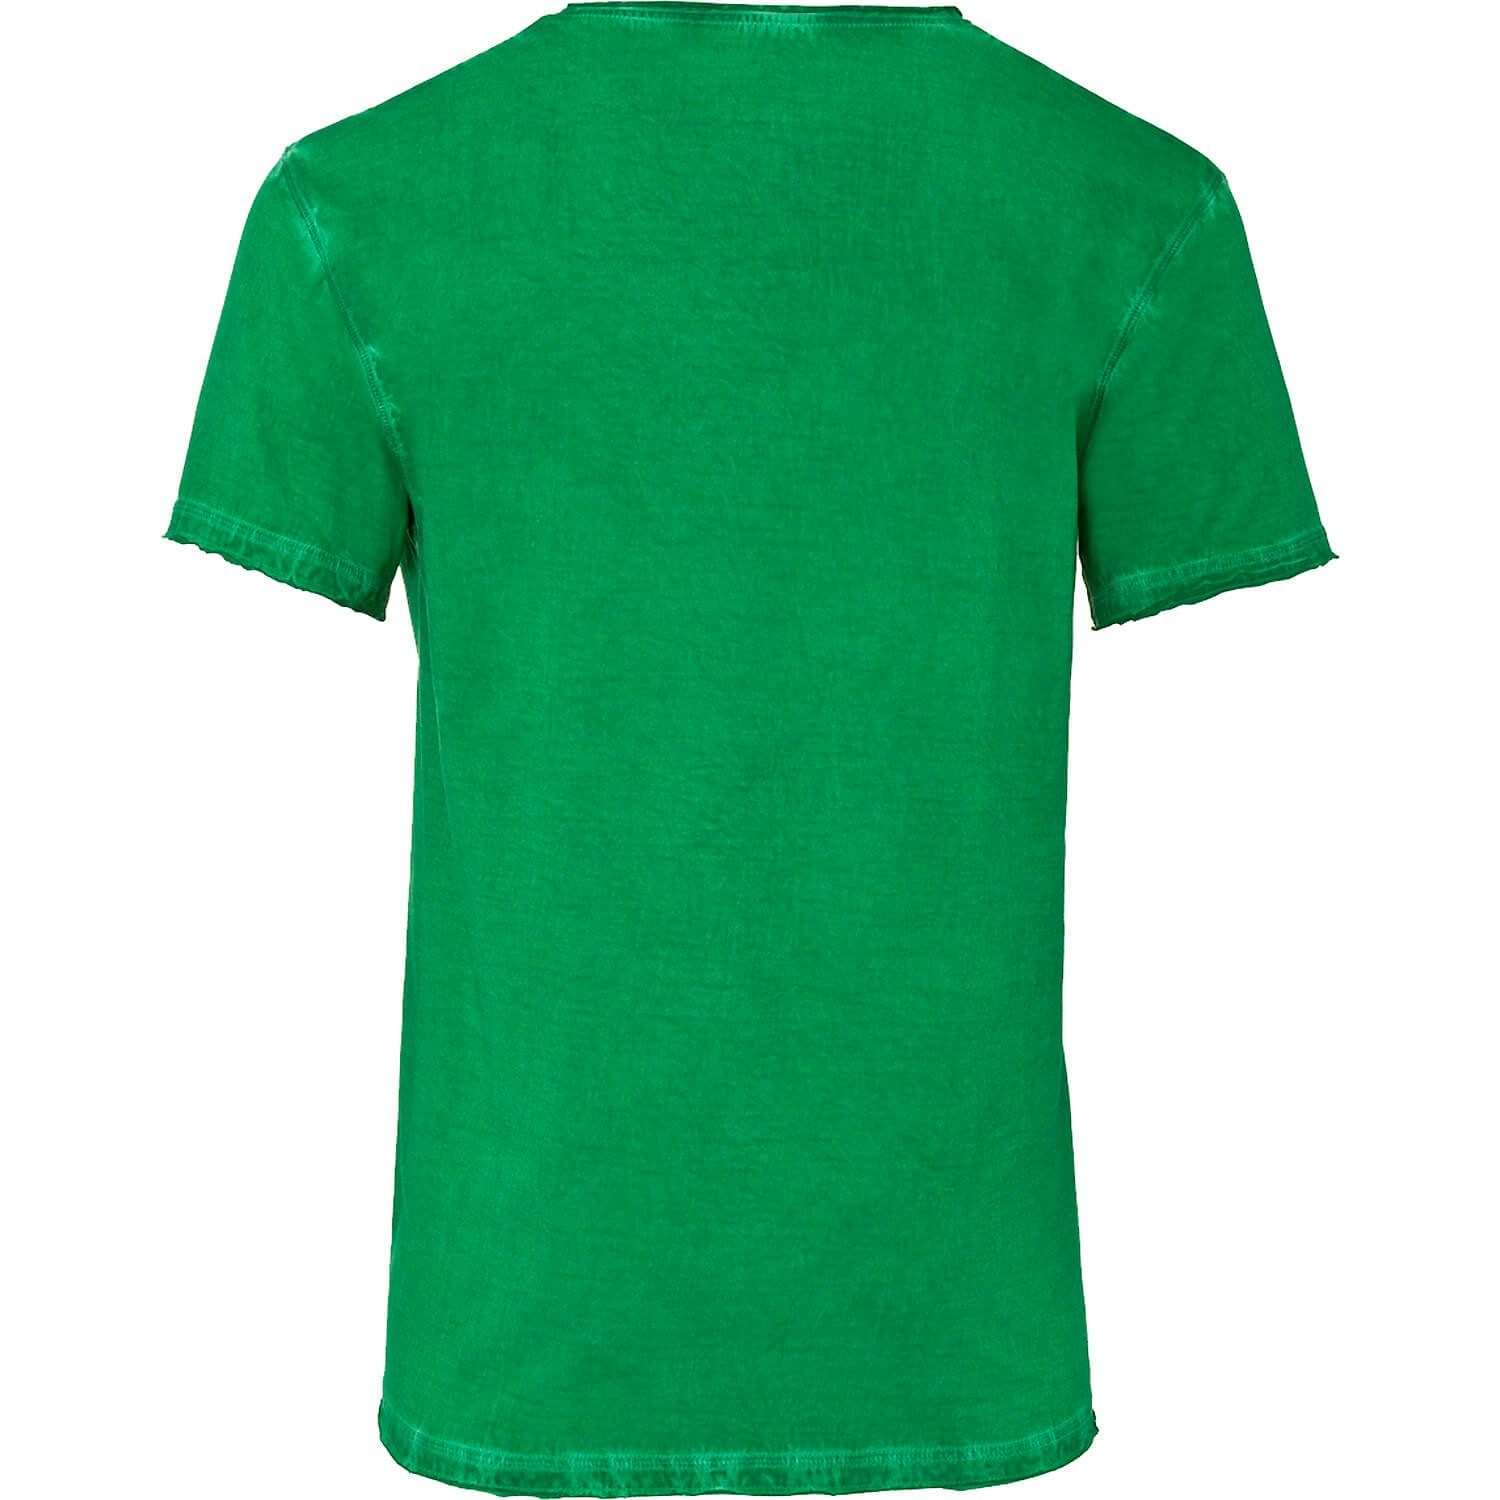 Wiesnkönig Grün T-Shirt Ludwig Trachtenshirt